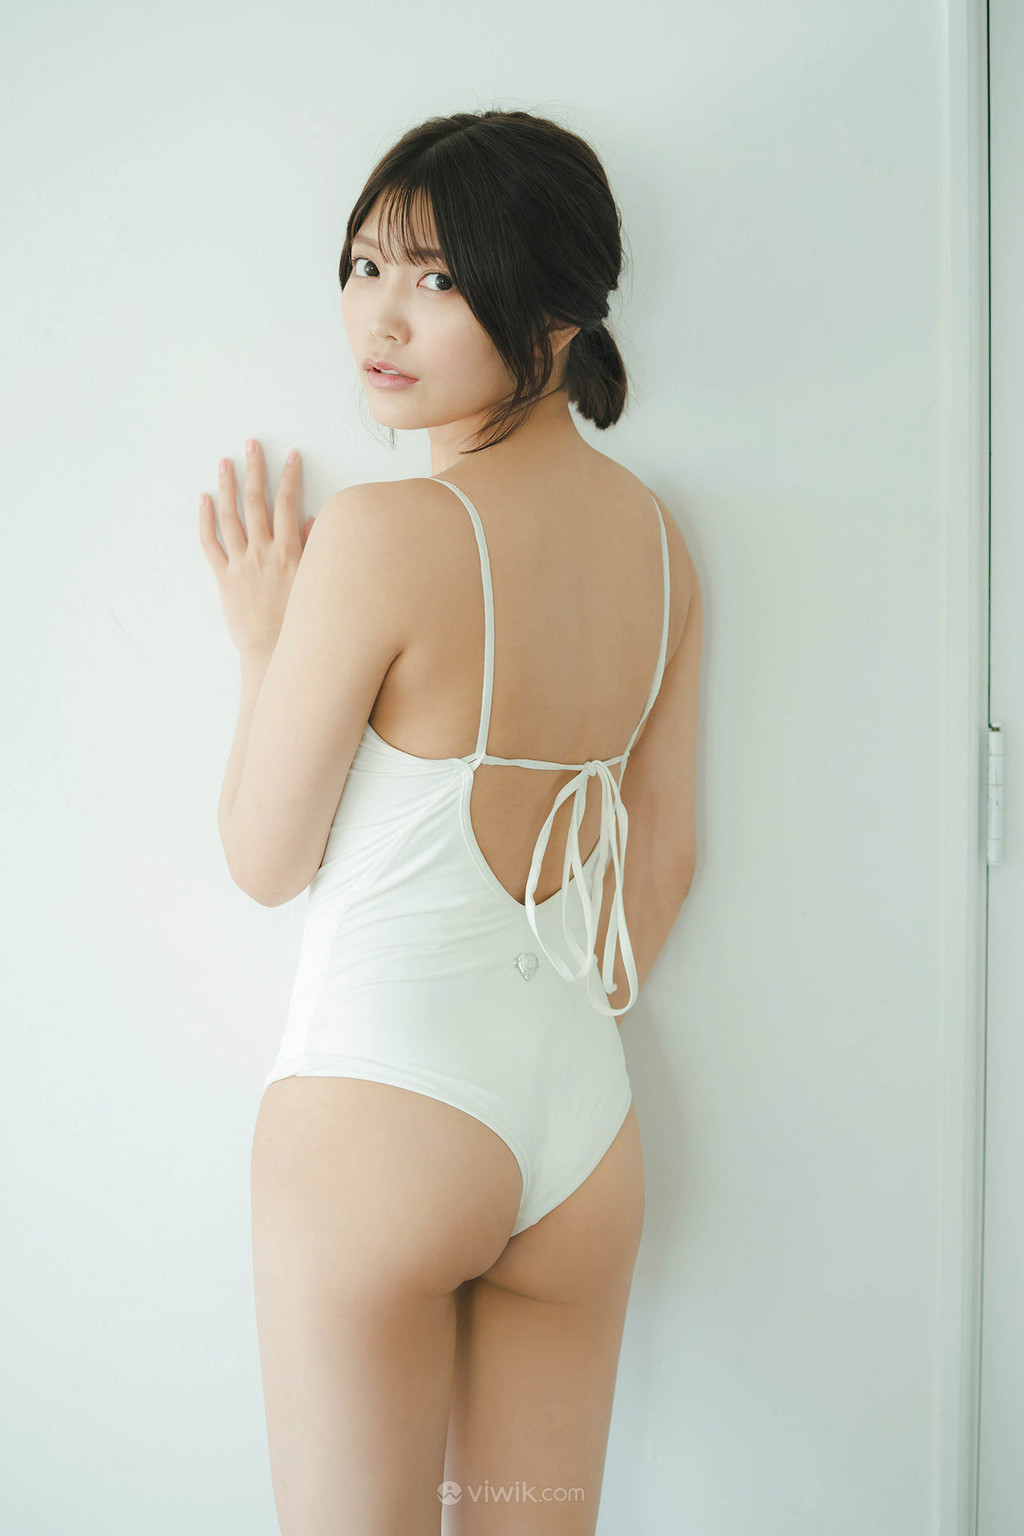 连体泳装日本美女背影写真图片